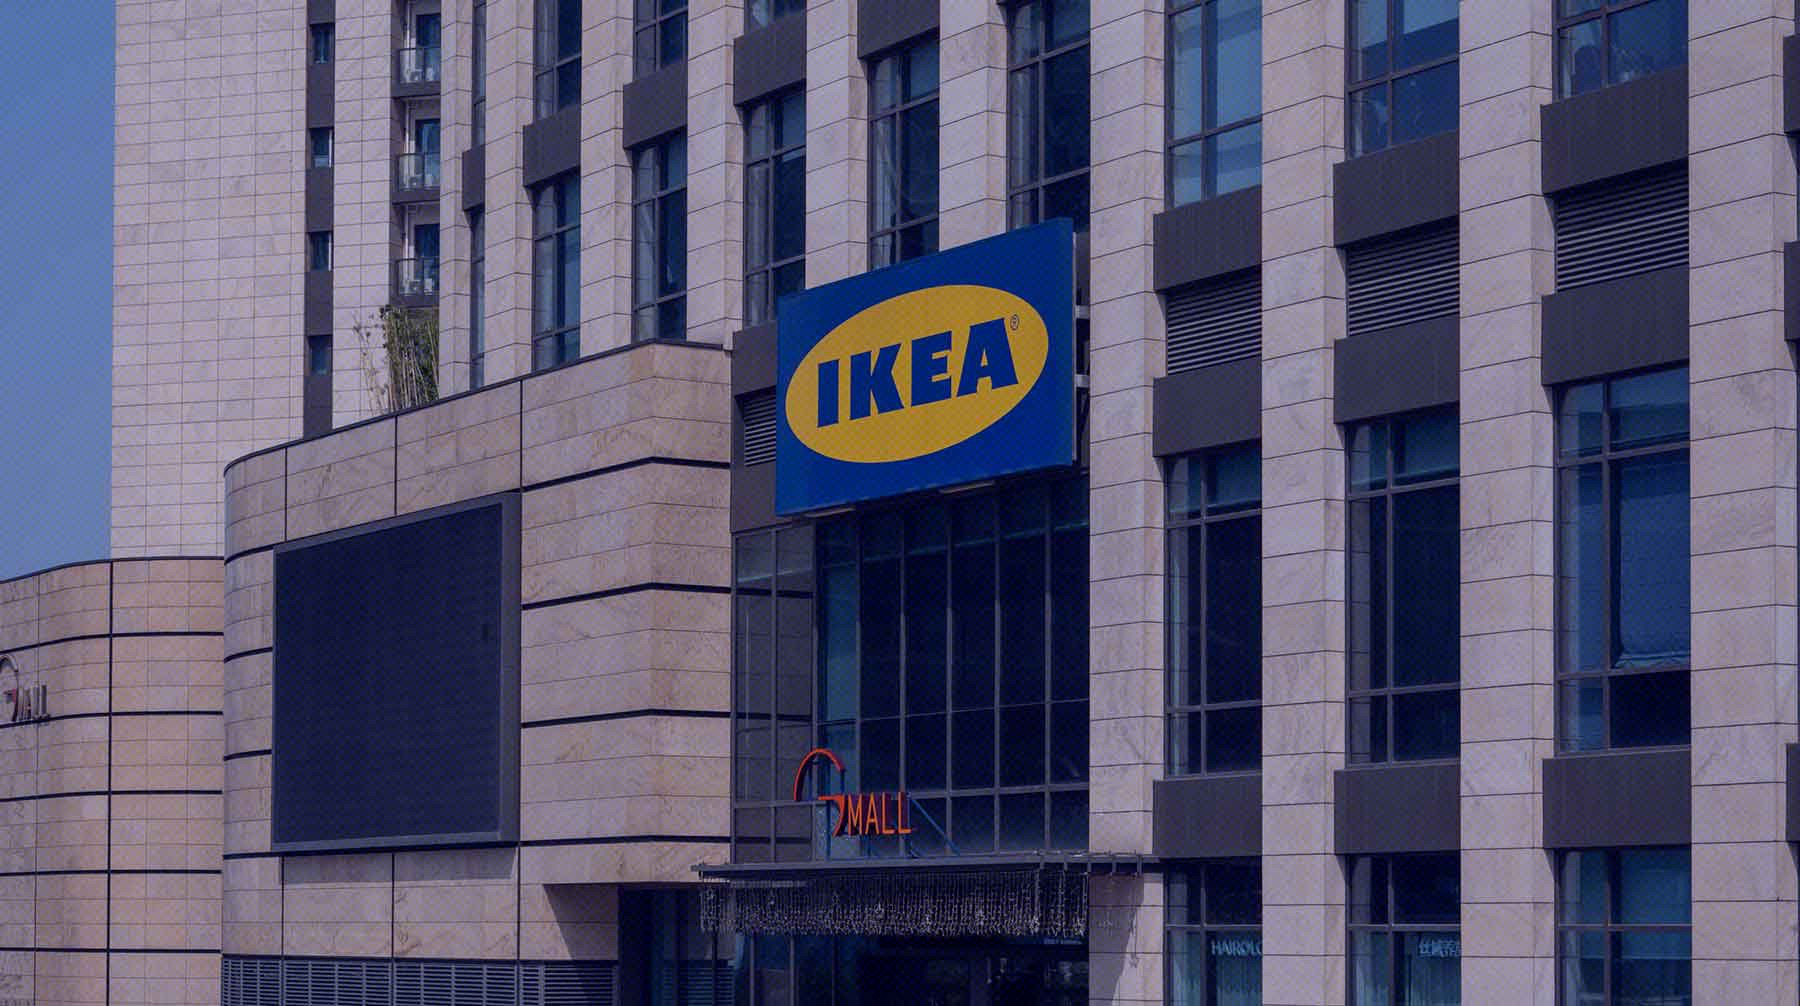 Dailystorm - Депутат Госдумы Арефьев предложил новому владельцу IKEA в России переименовать ее в «Простую сборку»